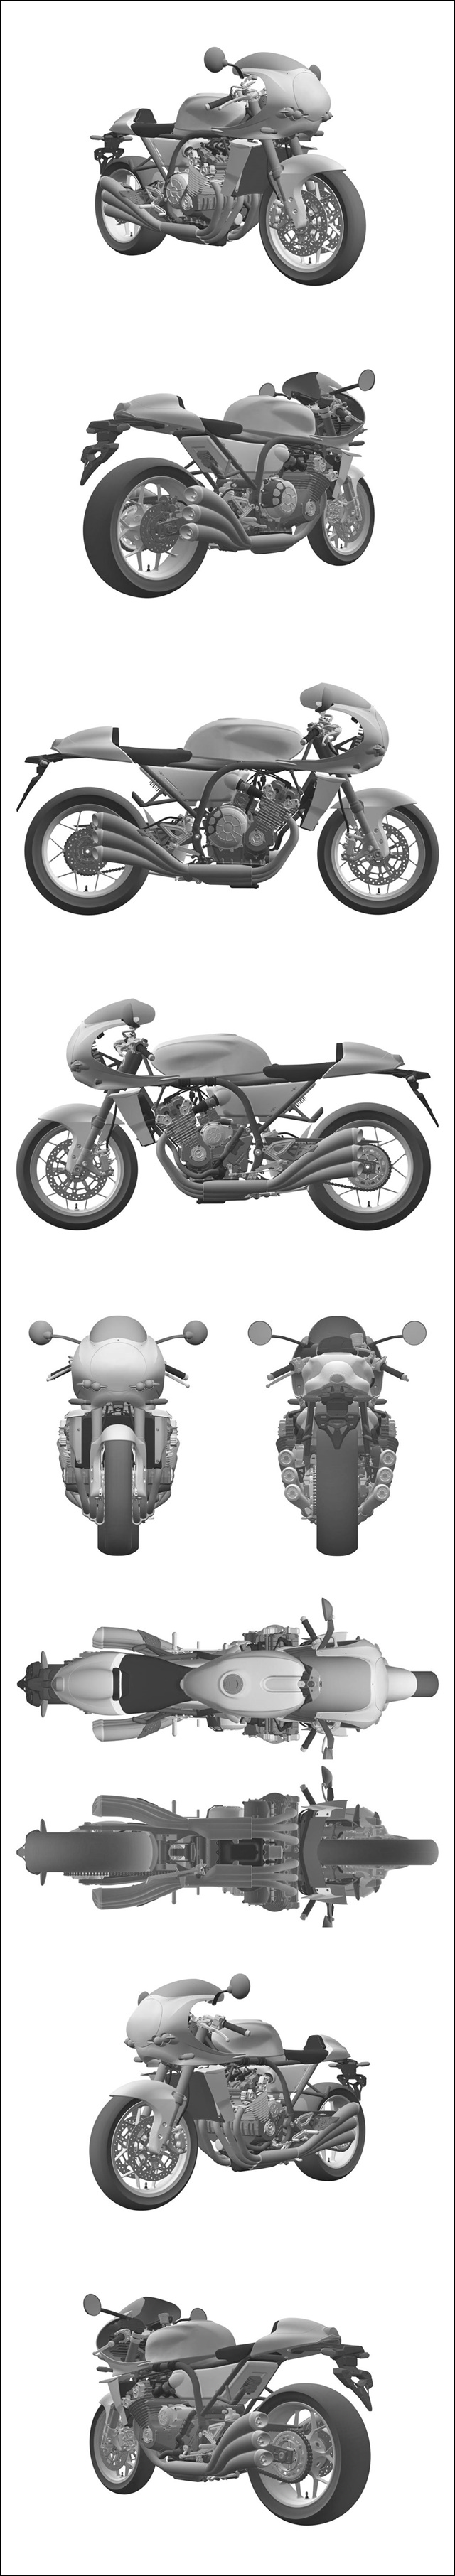 Cbx1000 Cbx10 の新型か 発売日や価格 スペックはどうなる オートバイのある生活 Life With Motorcycles